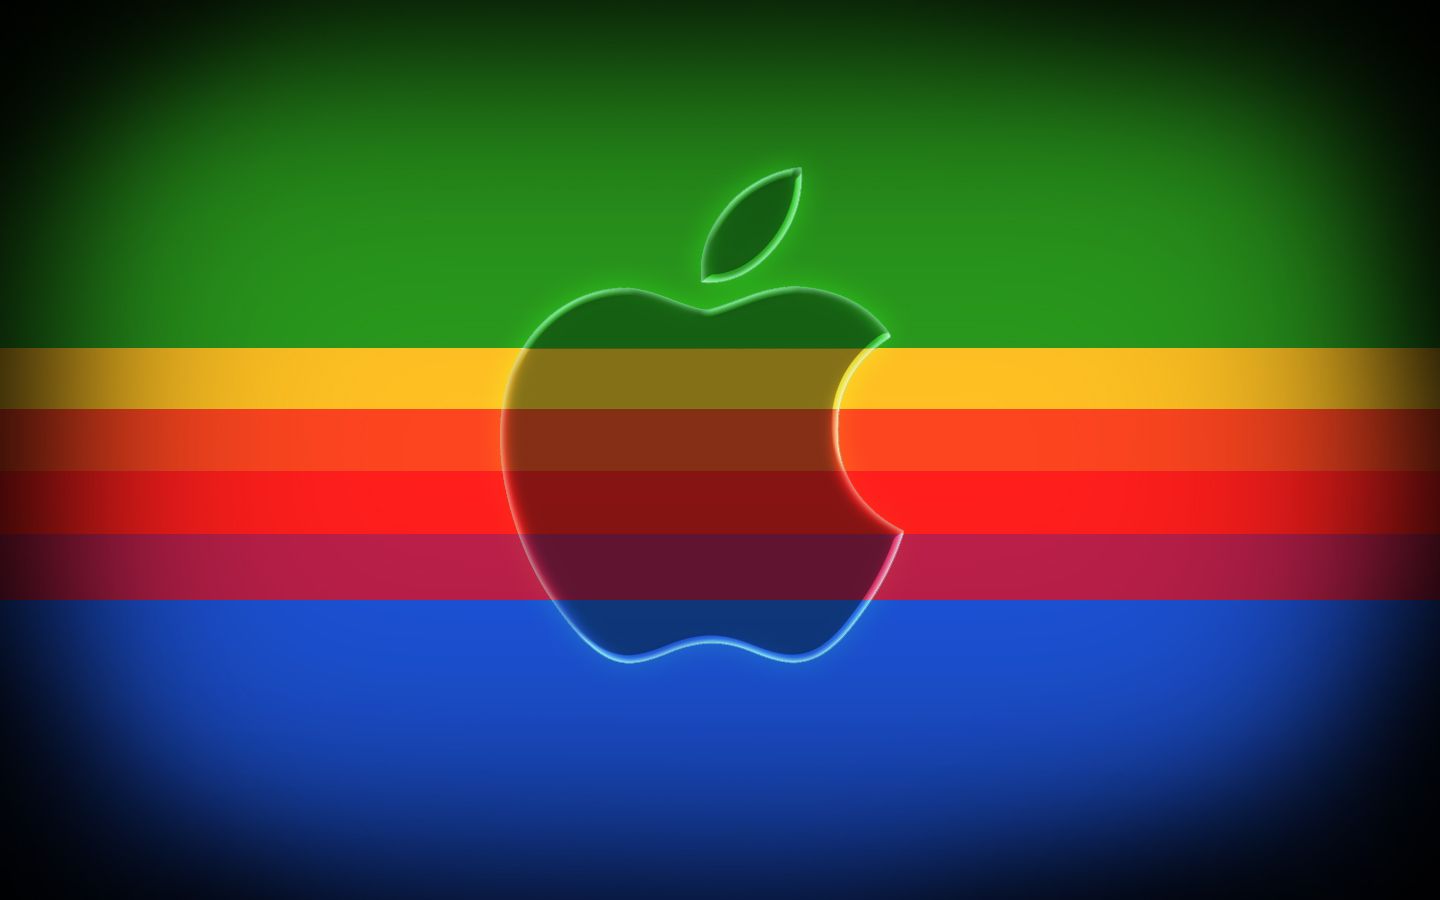 Rainbow Apple Mac Logo Wallpaper Desktop #6244 Wallpaper | High ...